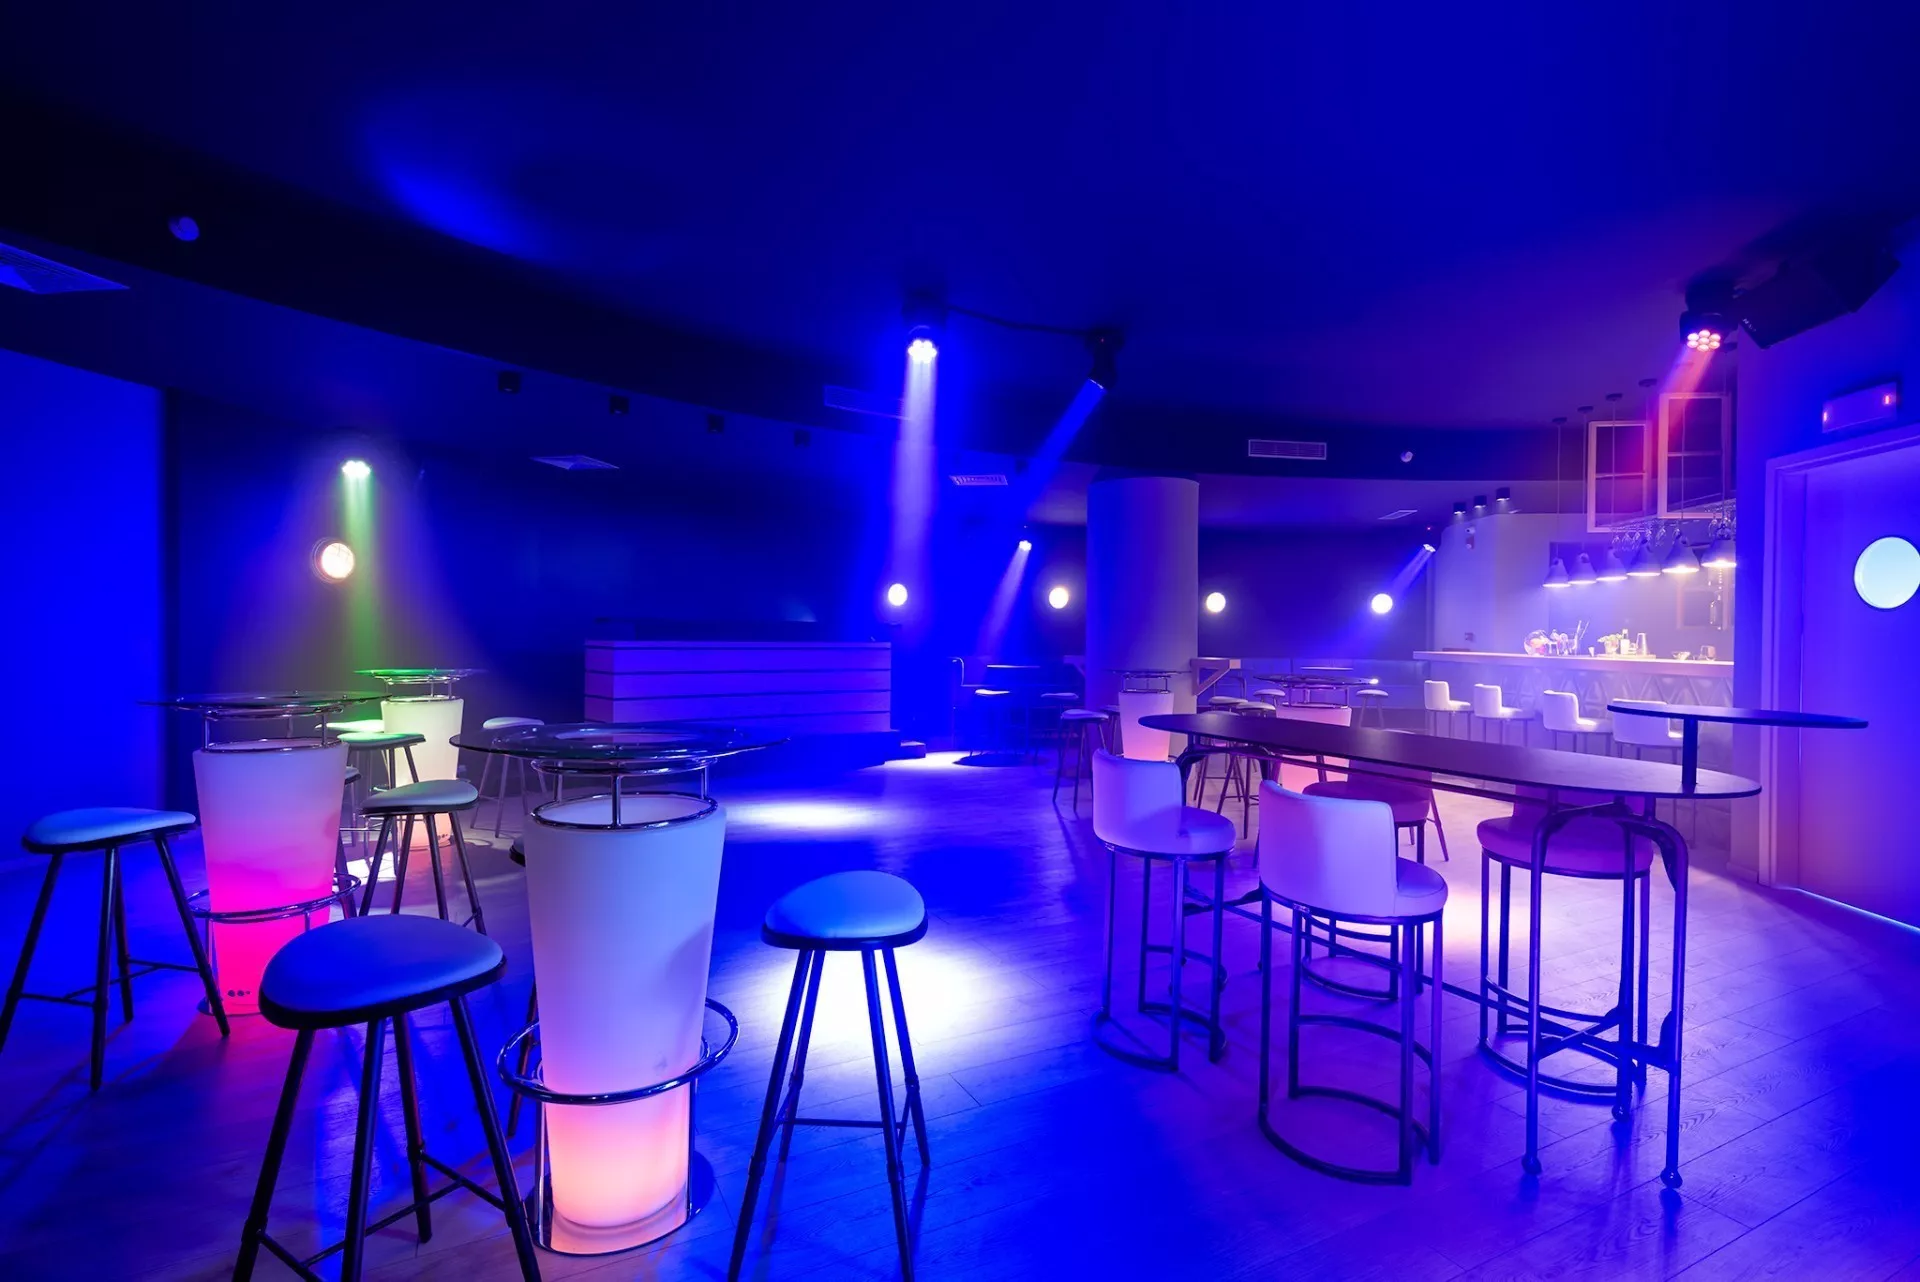 San Salvador Disco Bar & More in El Salvador, North America | Nightclubs - Rated 0.7